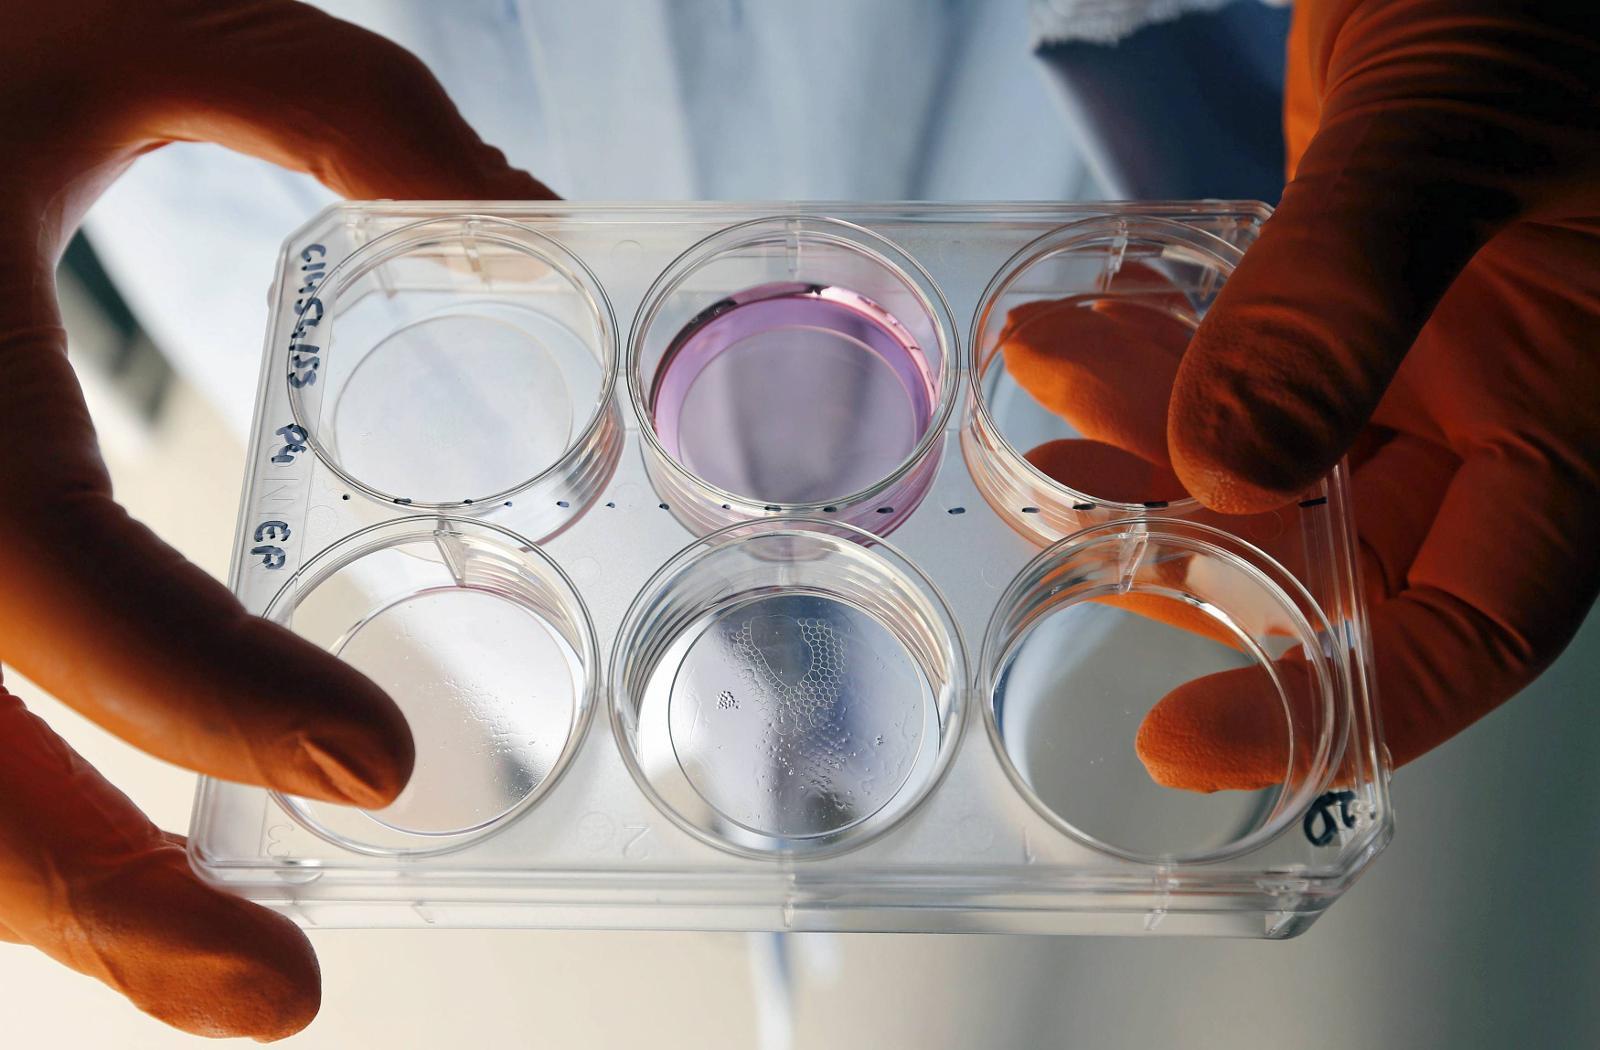 Franske forskere har utviklet en ny teknologi for såkalt bioprinting, som gjør det mulig å printe levende vev til bruk i blant annet kosmetikk, farmakologi og kirurgi - spesielt hudtransplantasjoner.